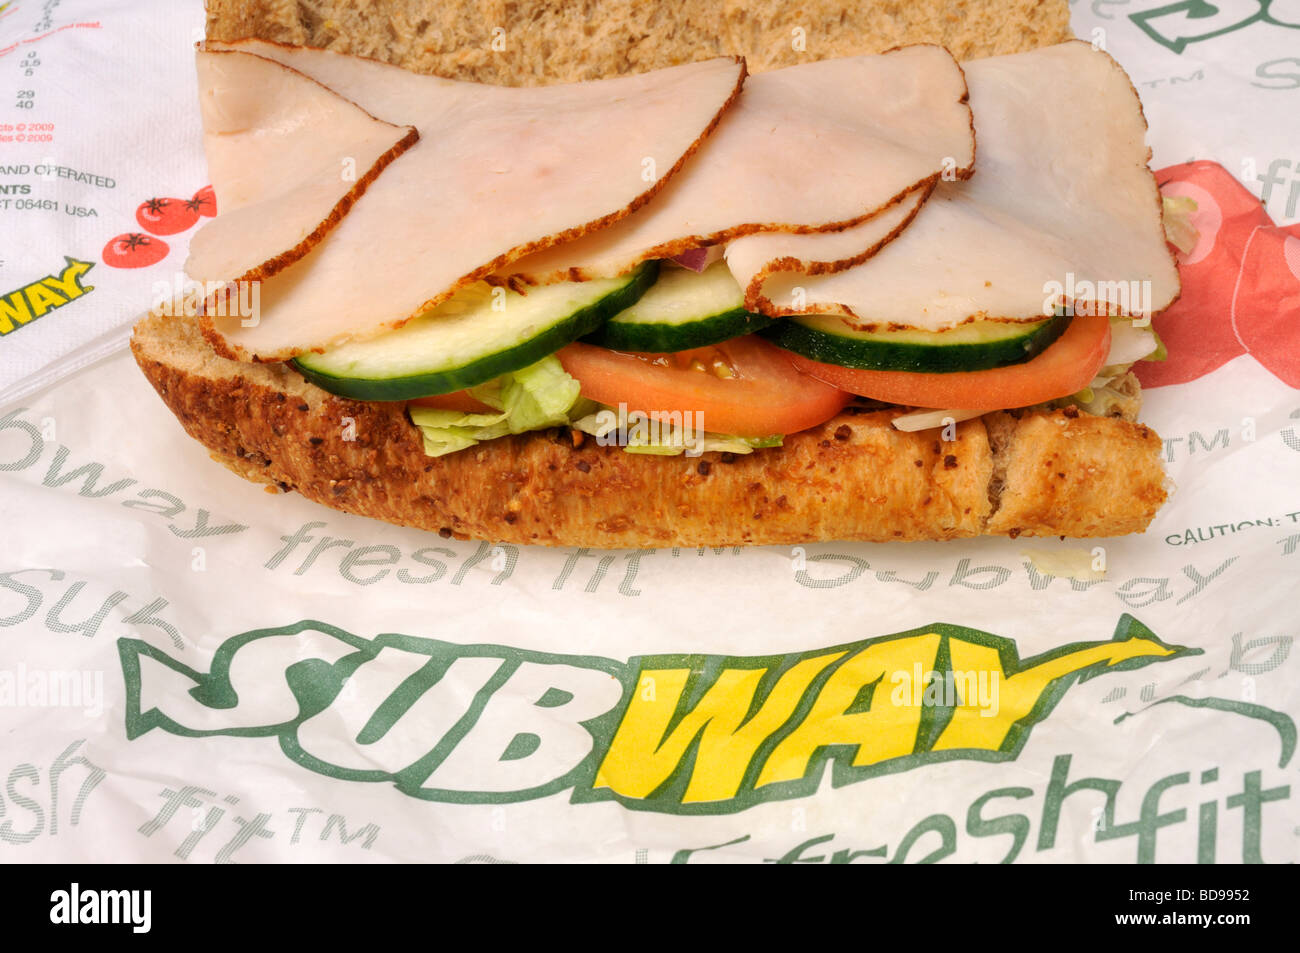 Alla metropolitana la Turchia sub sandwich sul wrapper con il logo della metropolitana USA Foto Stock